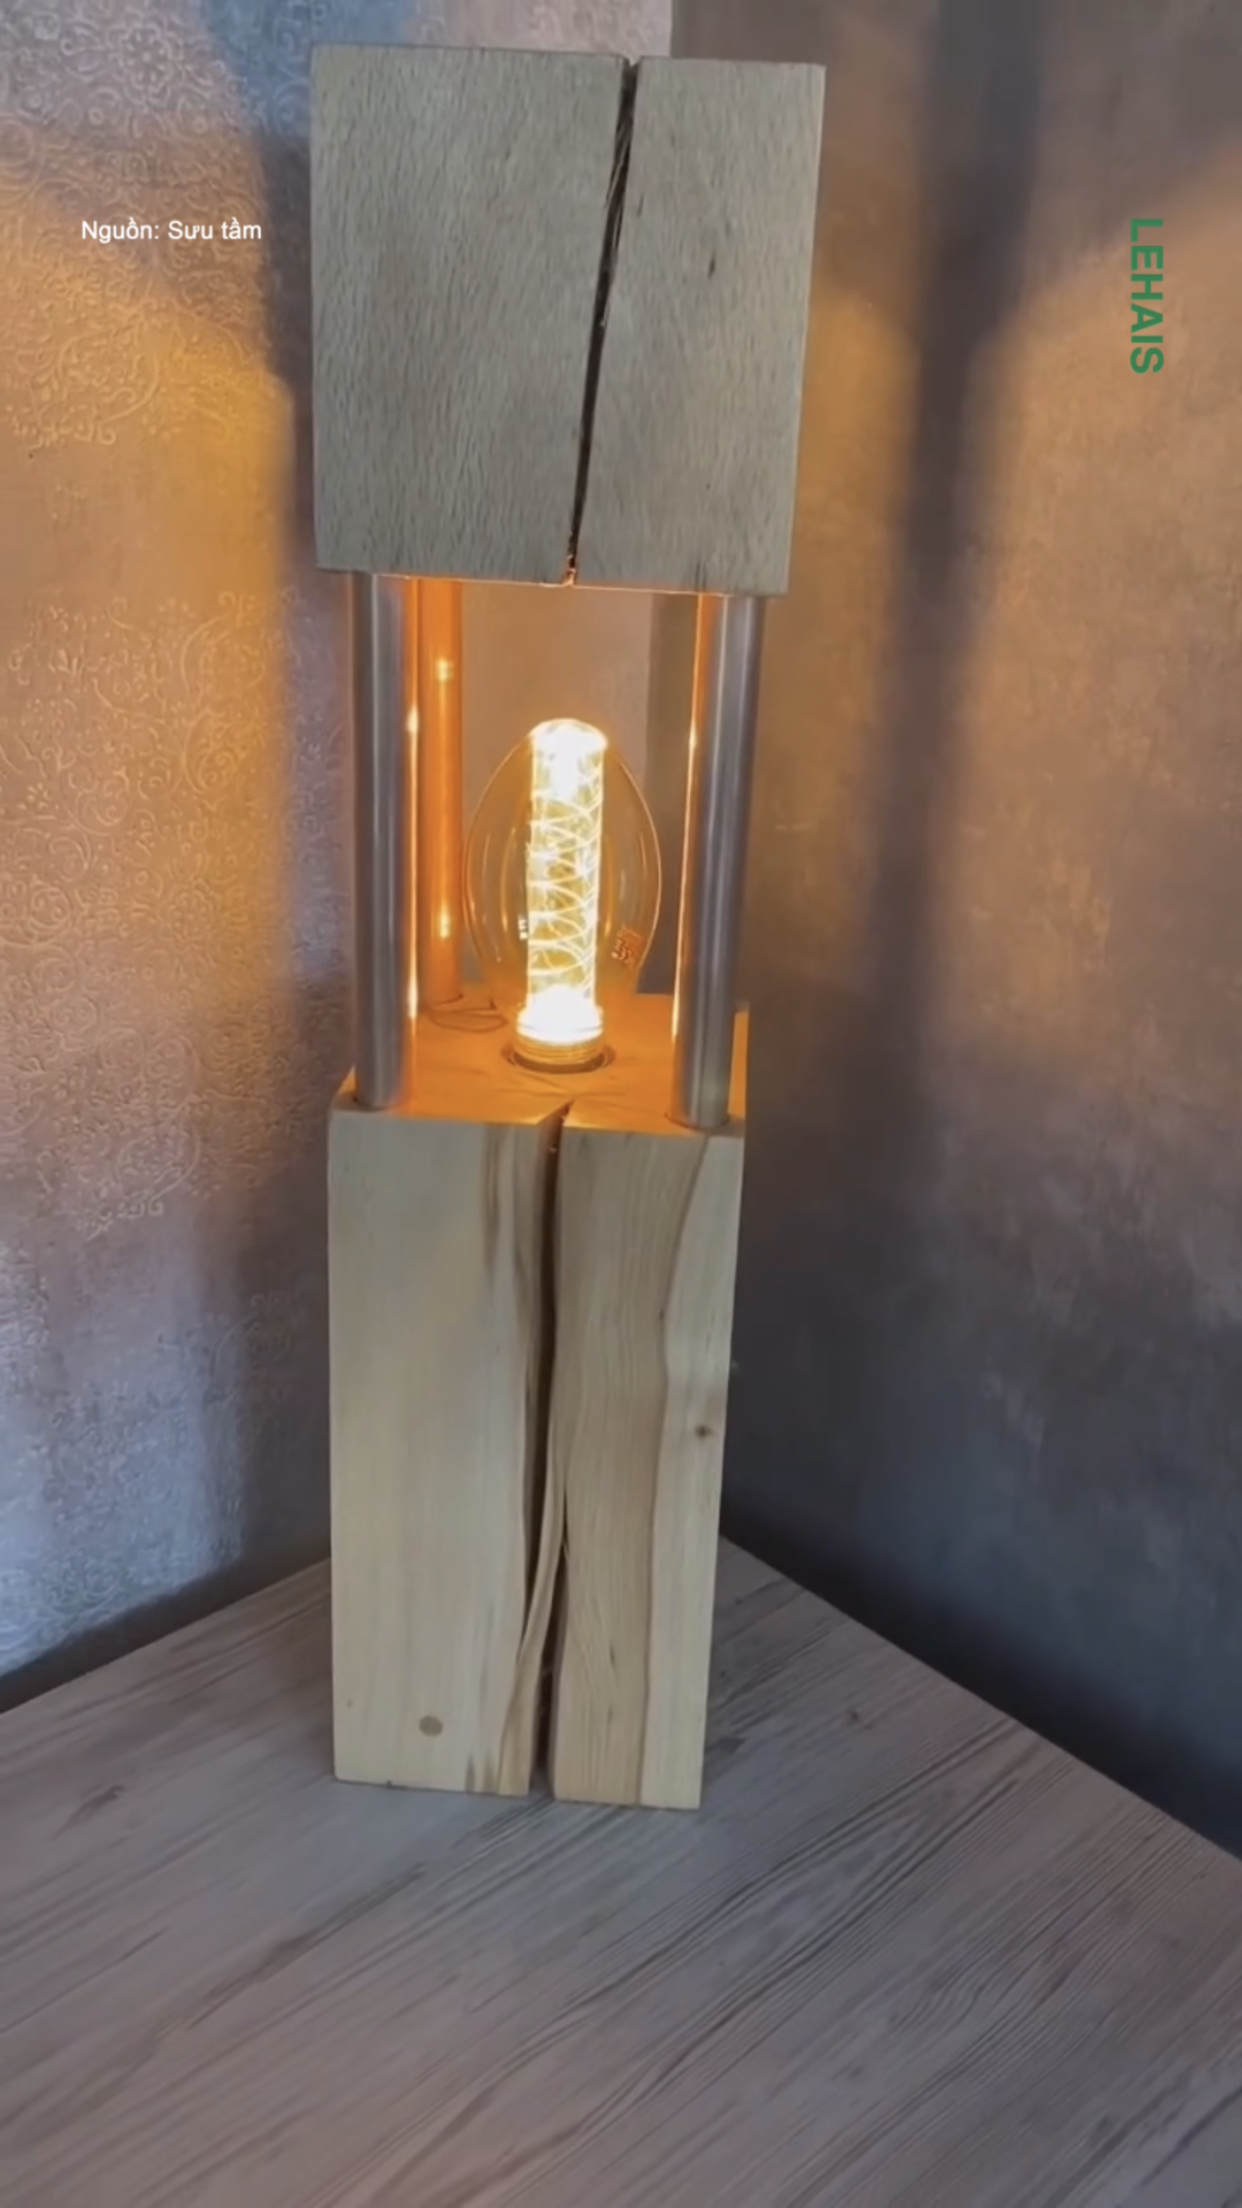 Đèn ngủ được làm thủ công từ thân gỗ 1